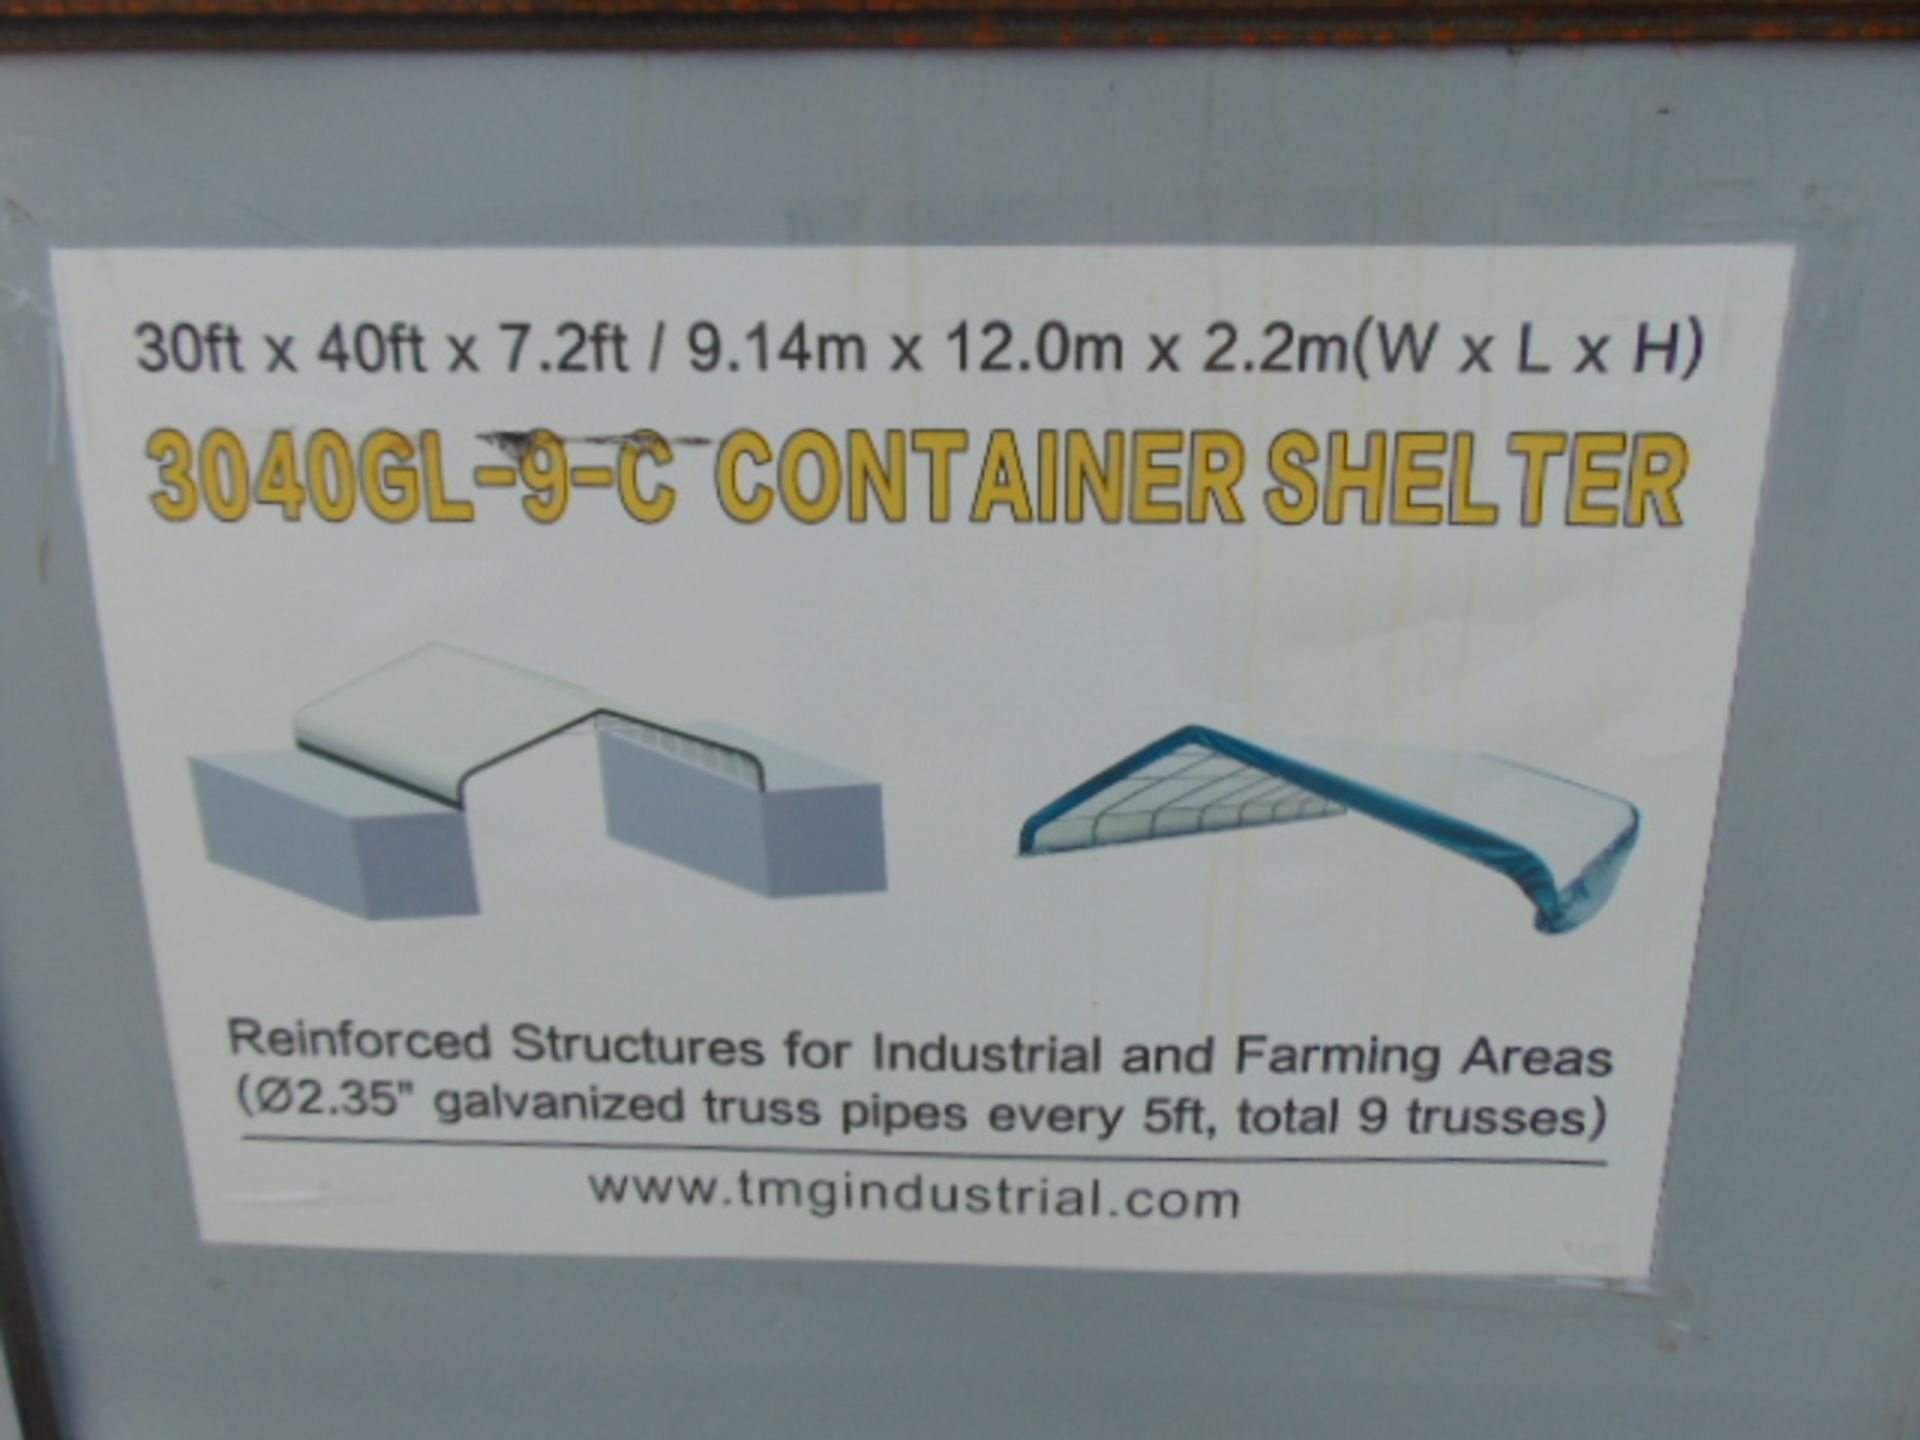 Container Shelter 30'W x 40'L x 7.2' H P/No 3040GL-9-C - Image 3 of 7